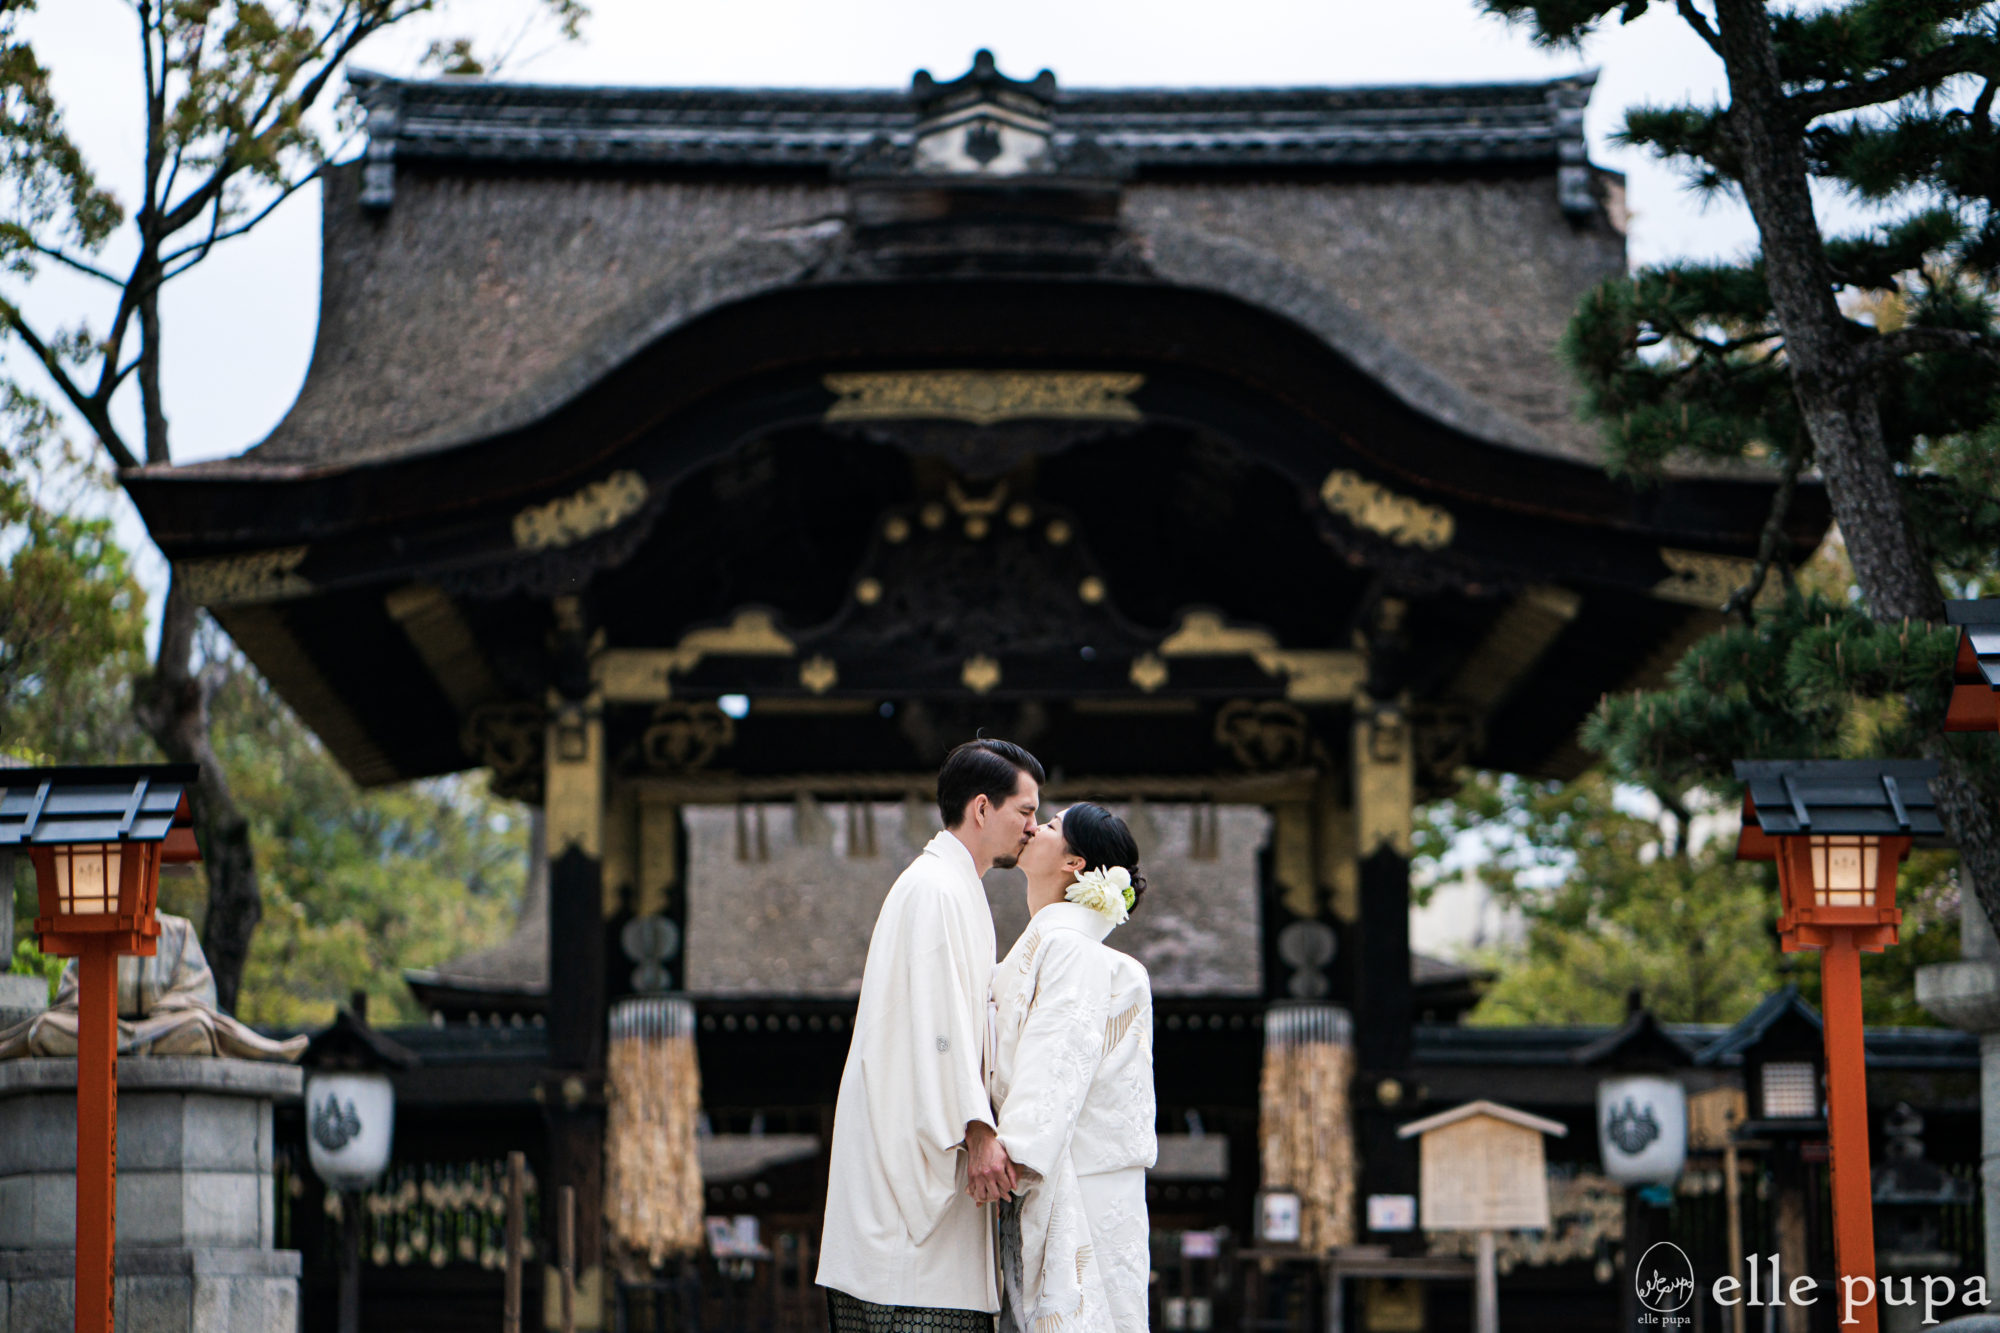 京都・豊国神社の山門前でウェディングフォトを撮影する新郎新婦。